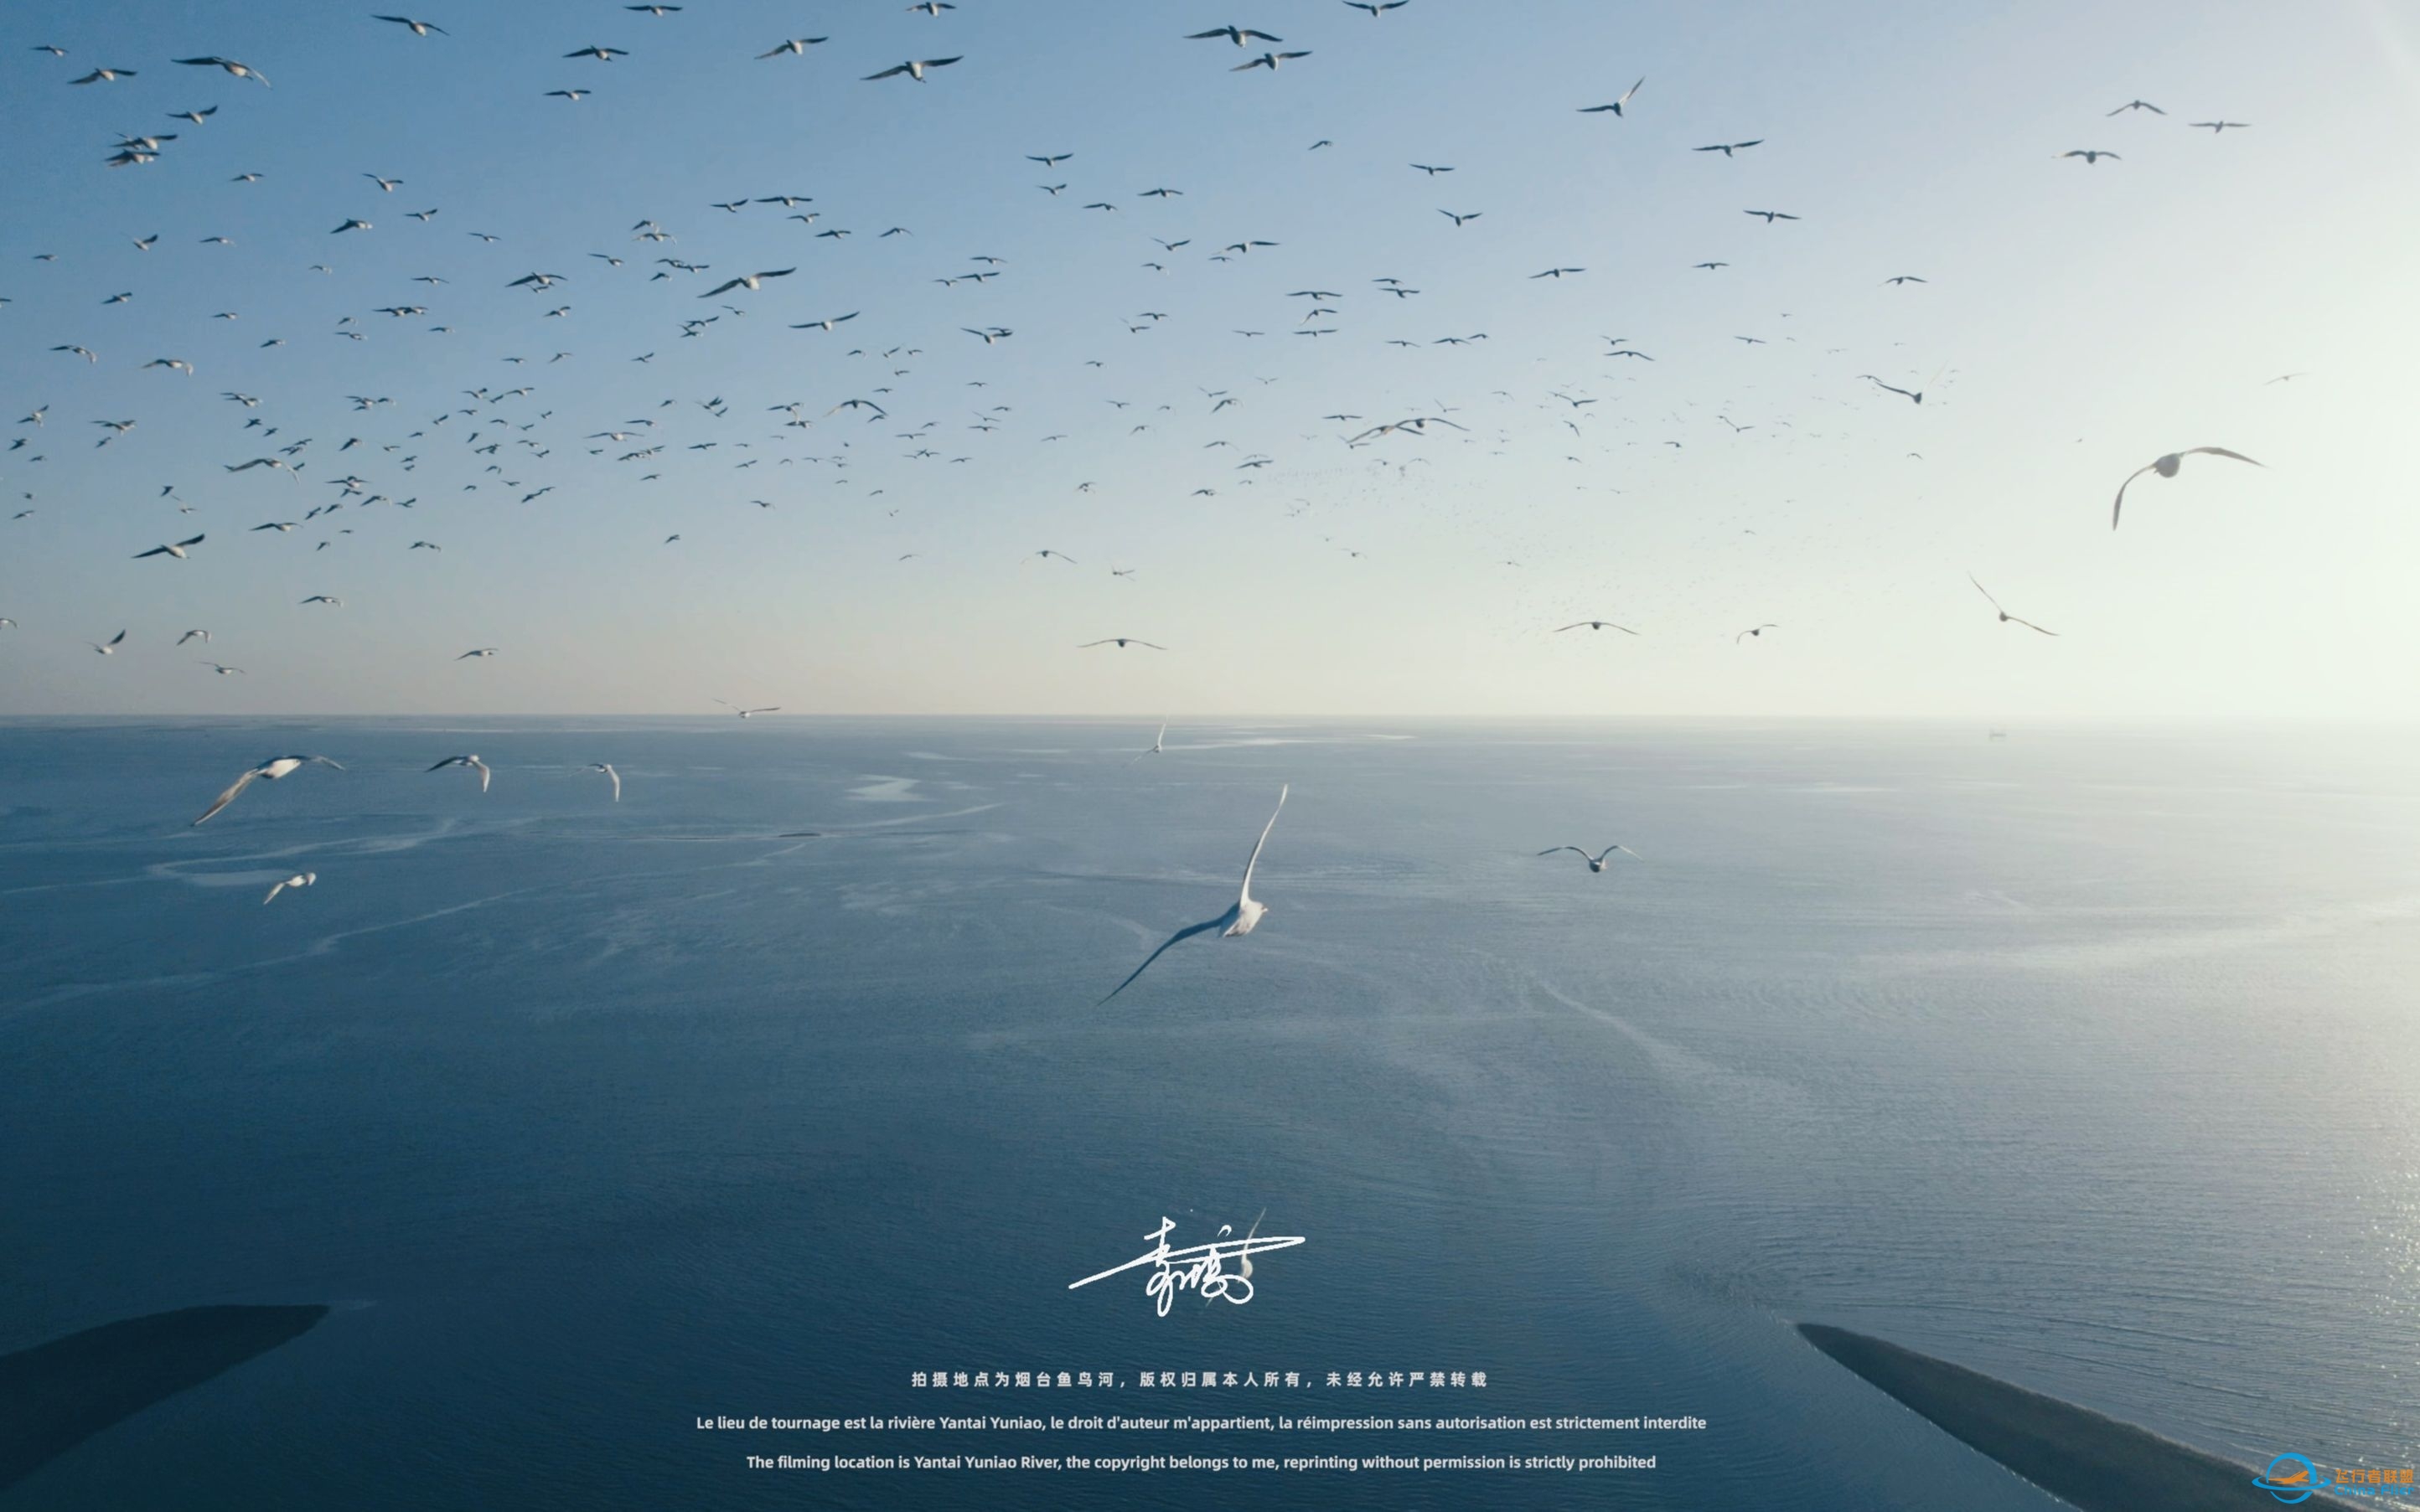 【沉浸式飞行】[DJI AIR 2S]一次跟海鸥一起的沉浸式飞行体验~-5169 